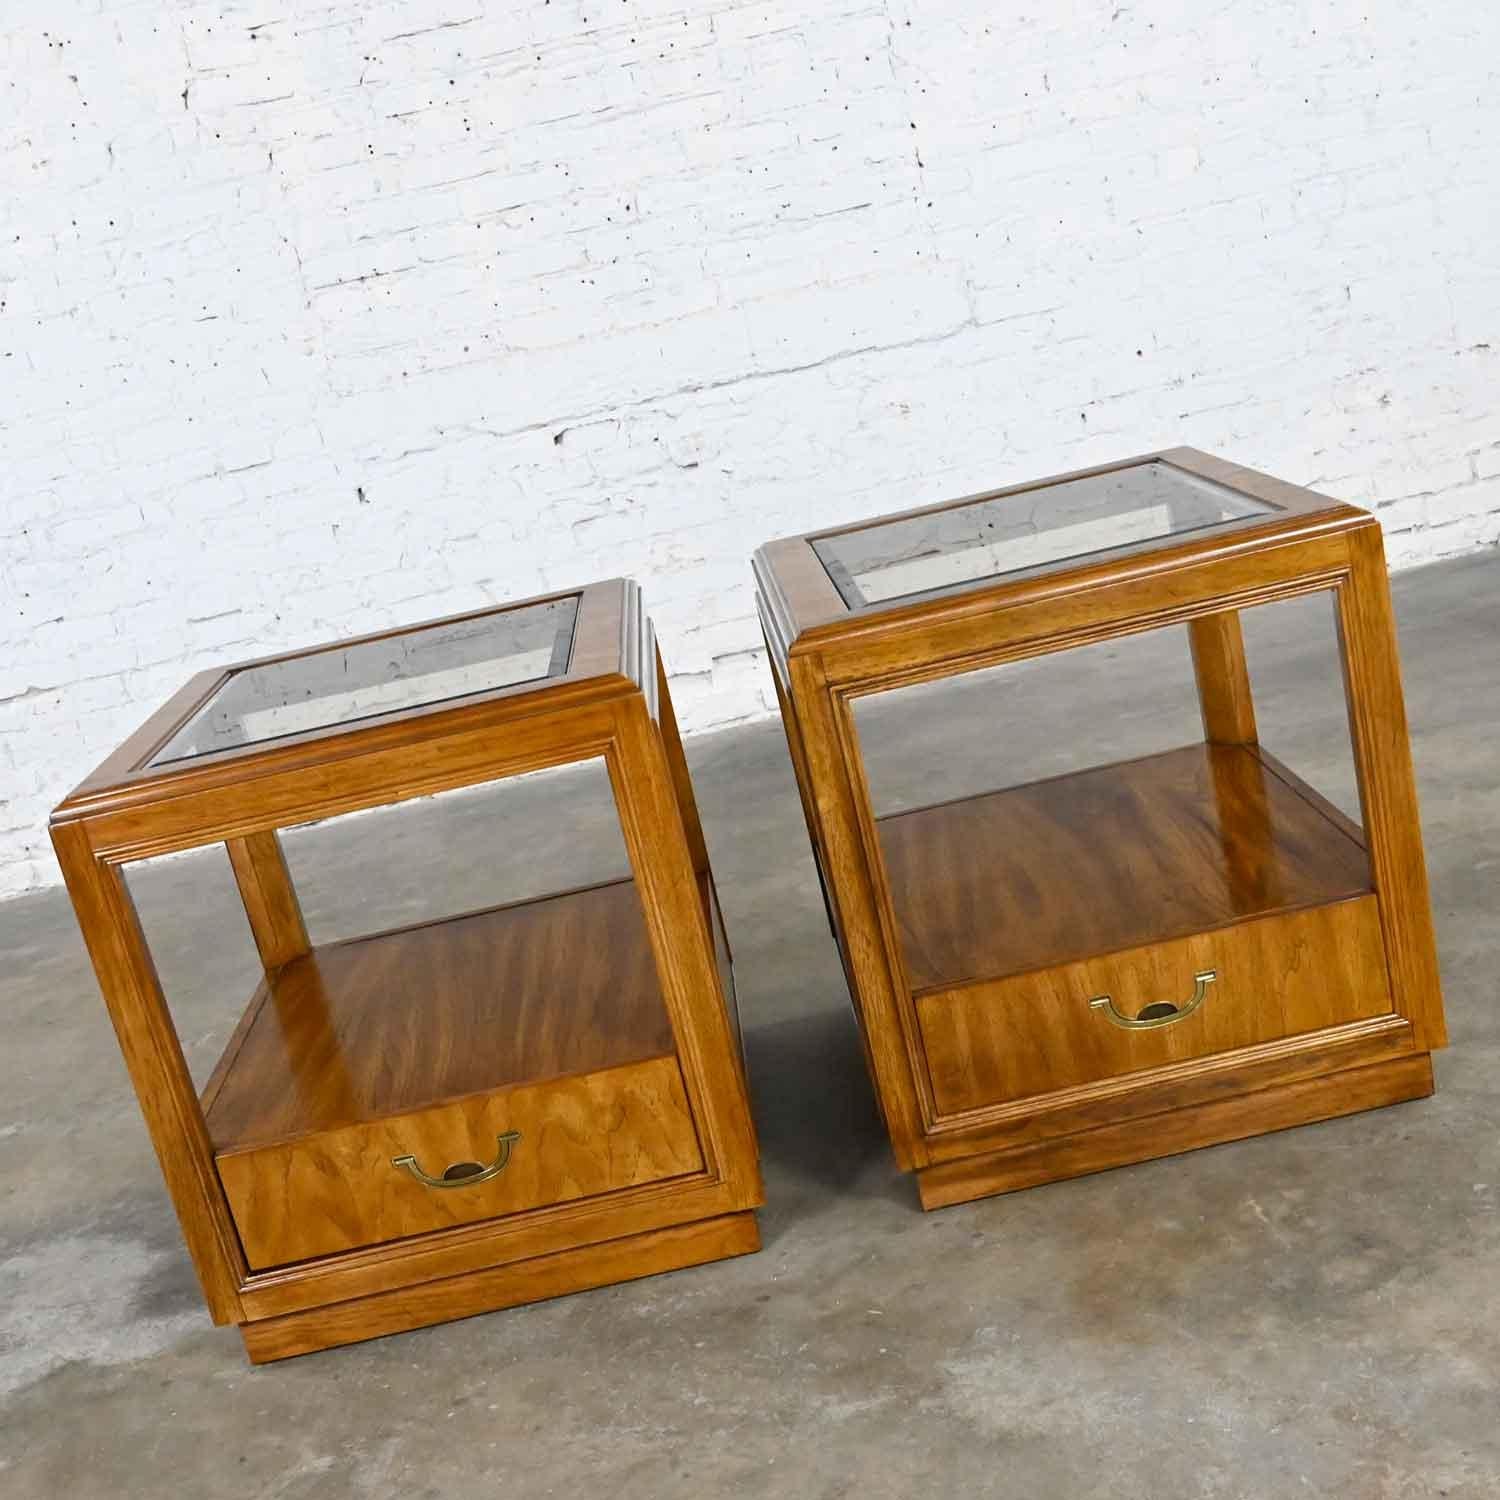 Wunderschöne Vintage Drexel Accolade II Collection Campaign Stil rechteckige Holz Ende Tabellen mit einer einzigen Schublade, Messing verchromt Hardware und abgeschrägte Glaseinsätze. Schöner Zustand, im Auge behalten, dass diese sind Vintage und